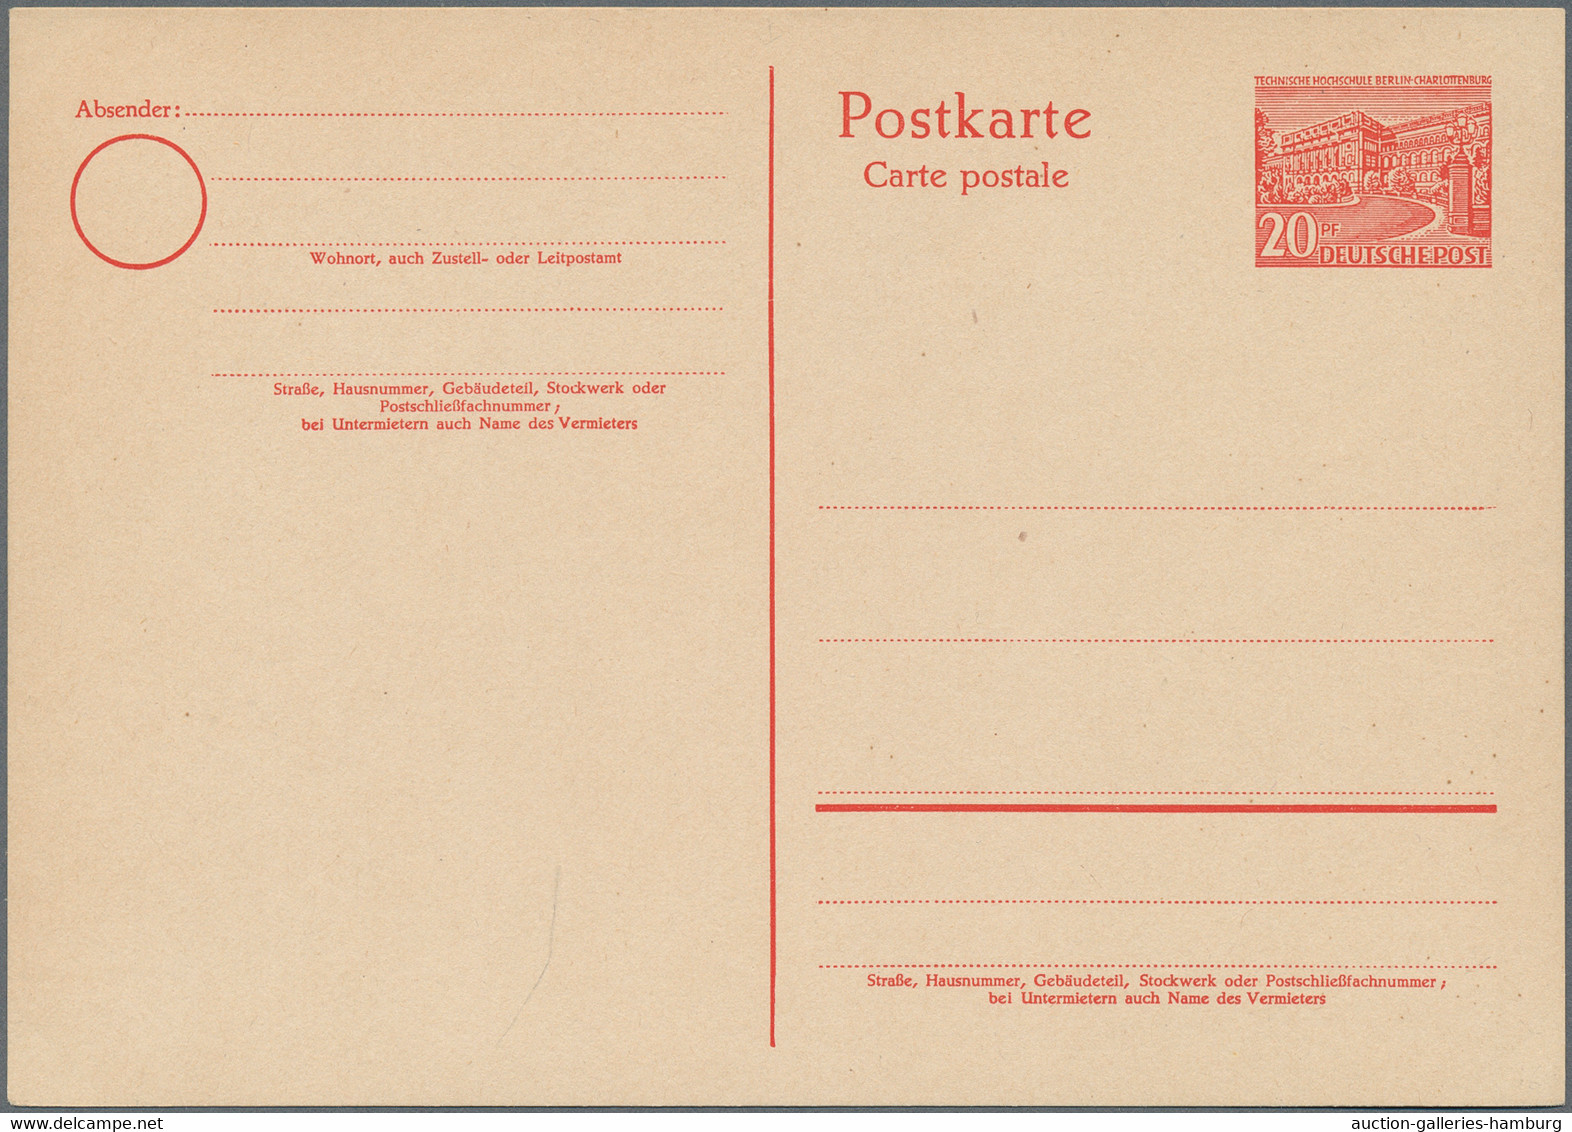 Berlin - Ganzsachen: 1949/1989, saubere Sammlung von 89 verschiedenen ungebrauch